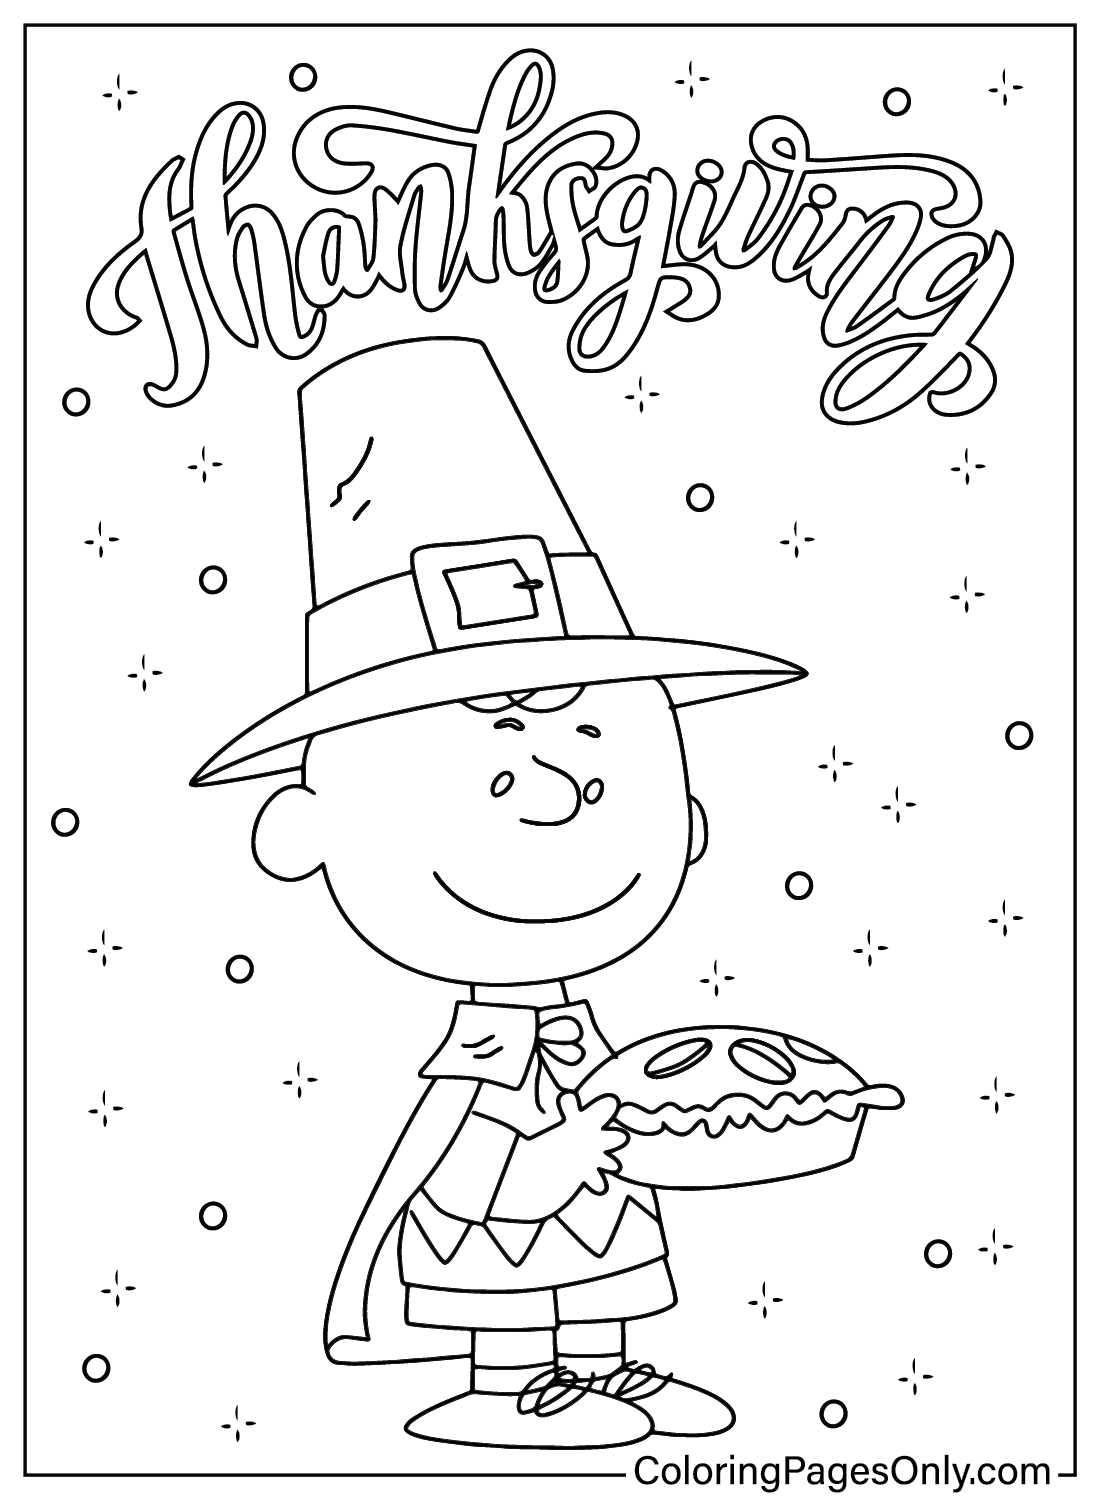 Página para colorear de Charlie Brown de Acción de Gracias de dibujos animados de Acción de Gracias